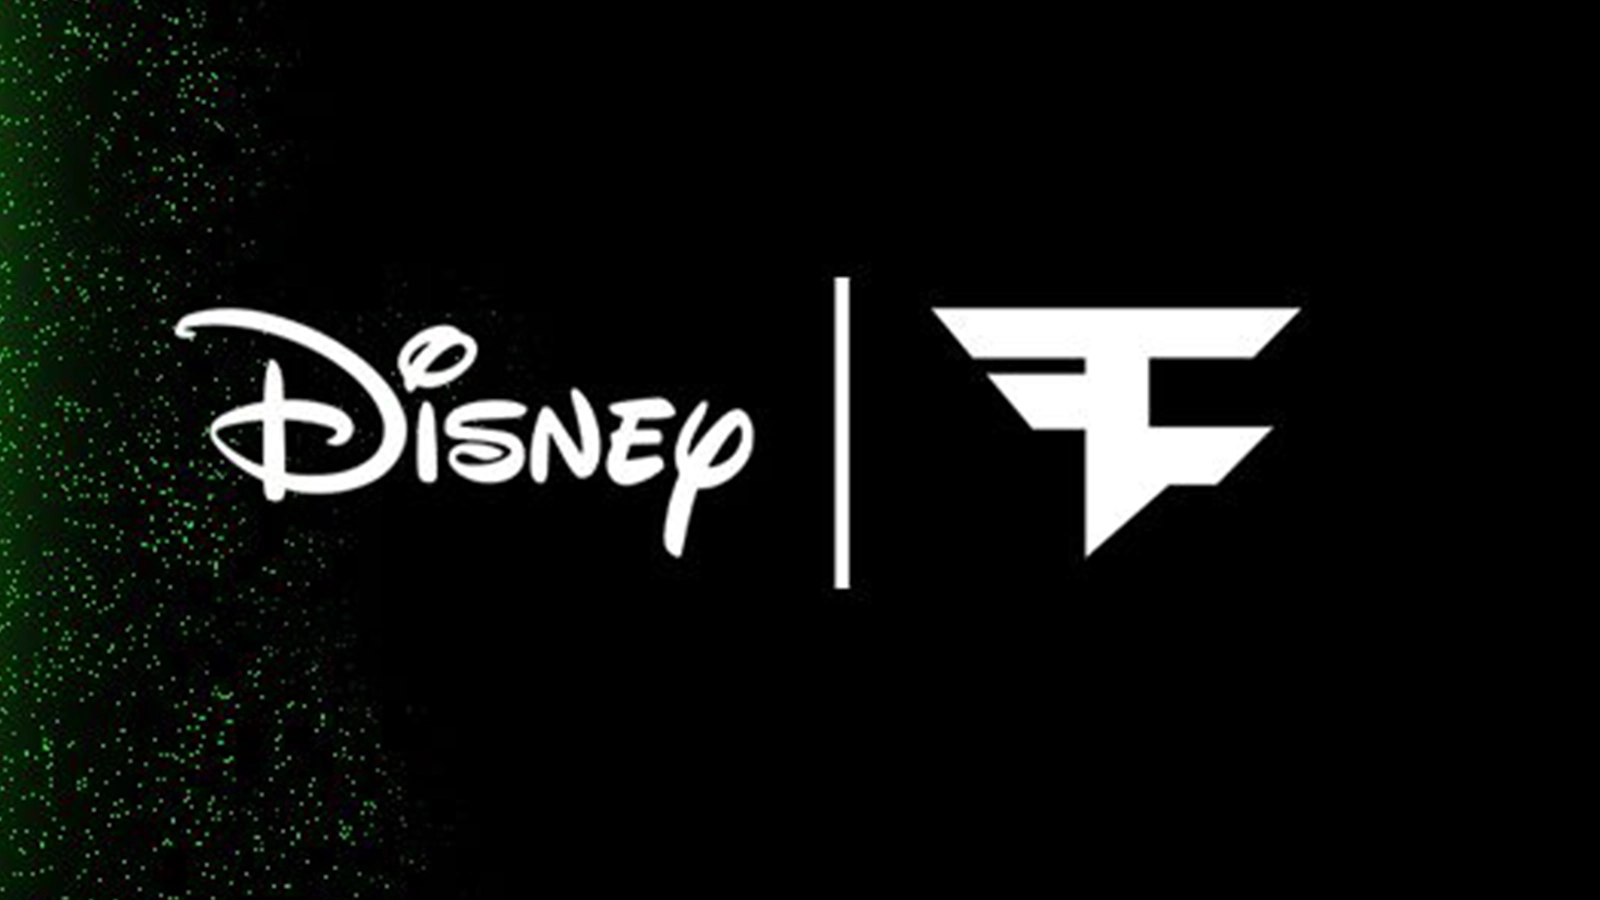 faze clan anunciou uma colaboração de um ano com a Disney!